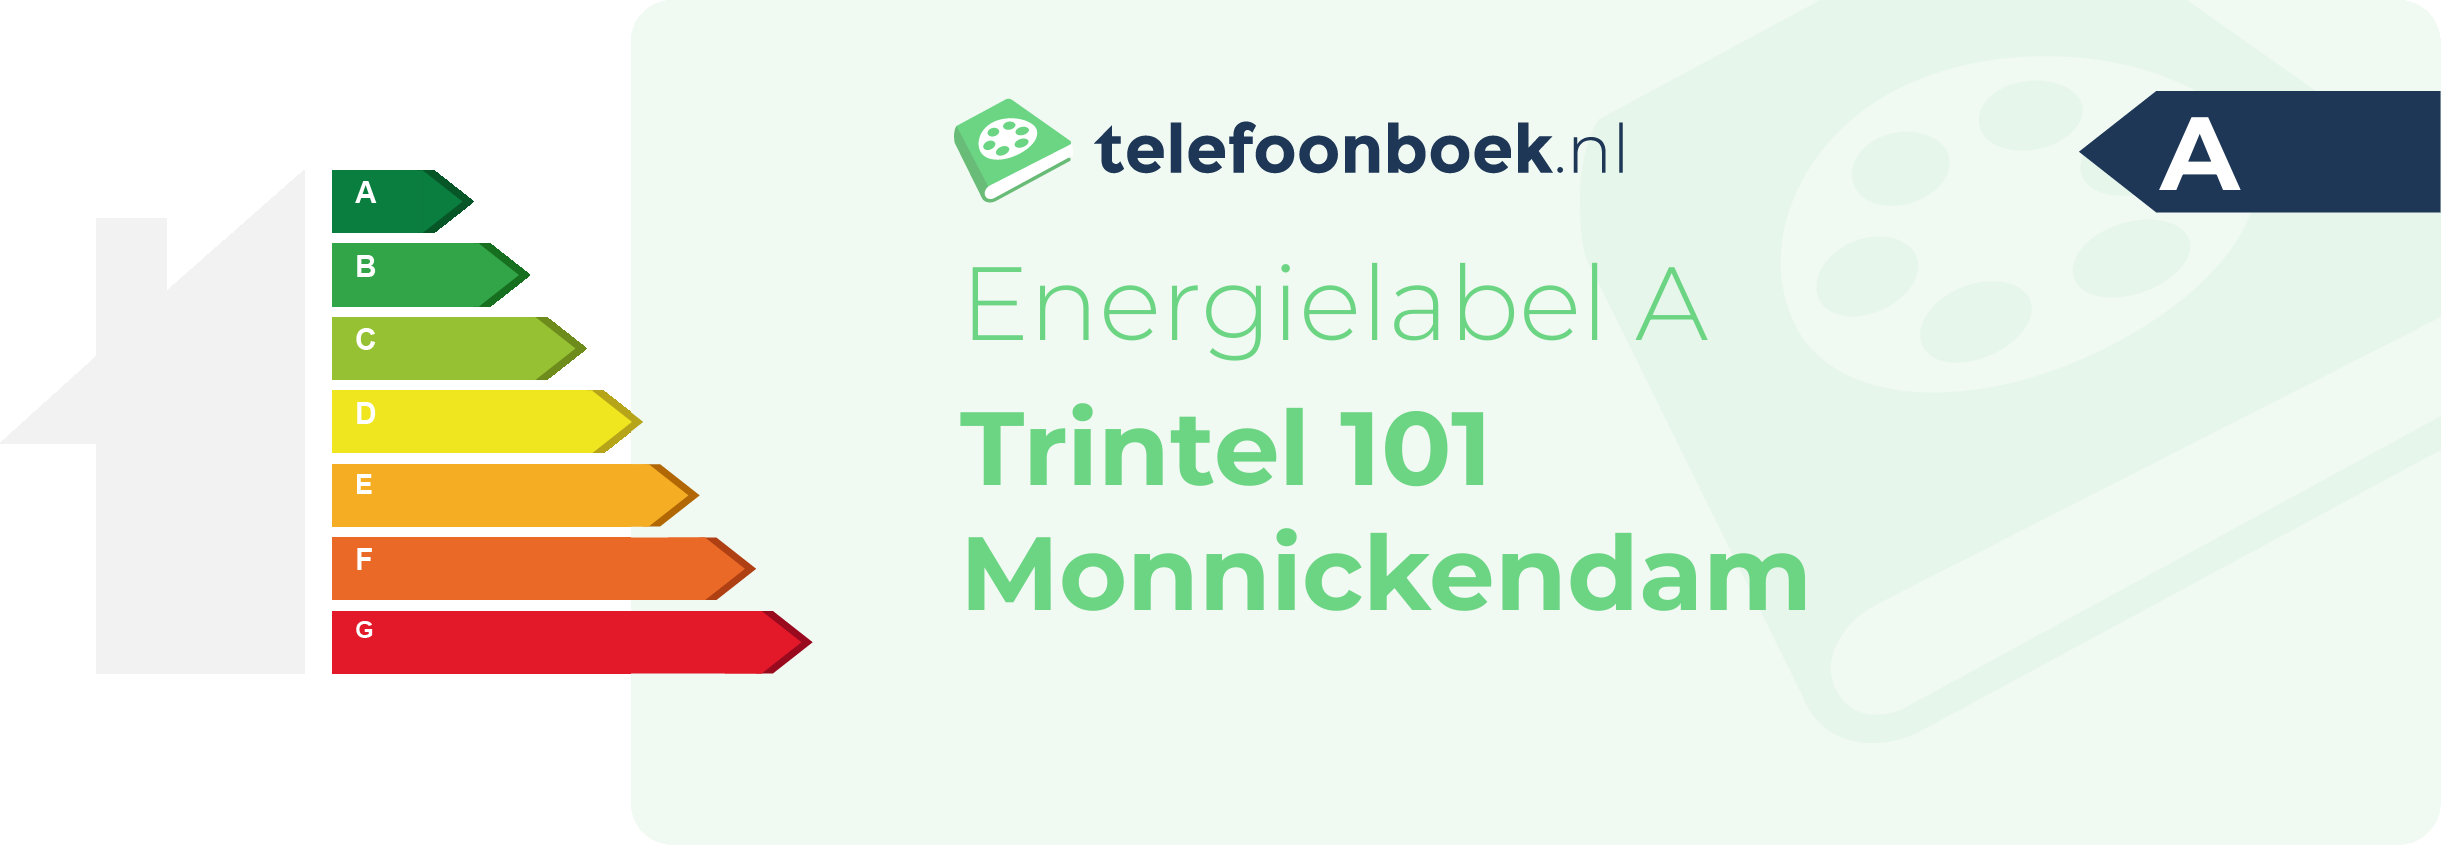 Energielabel Trintel 101 Monnickendam